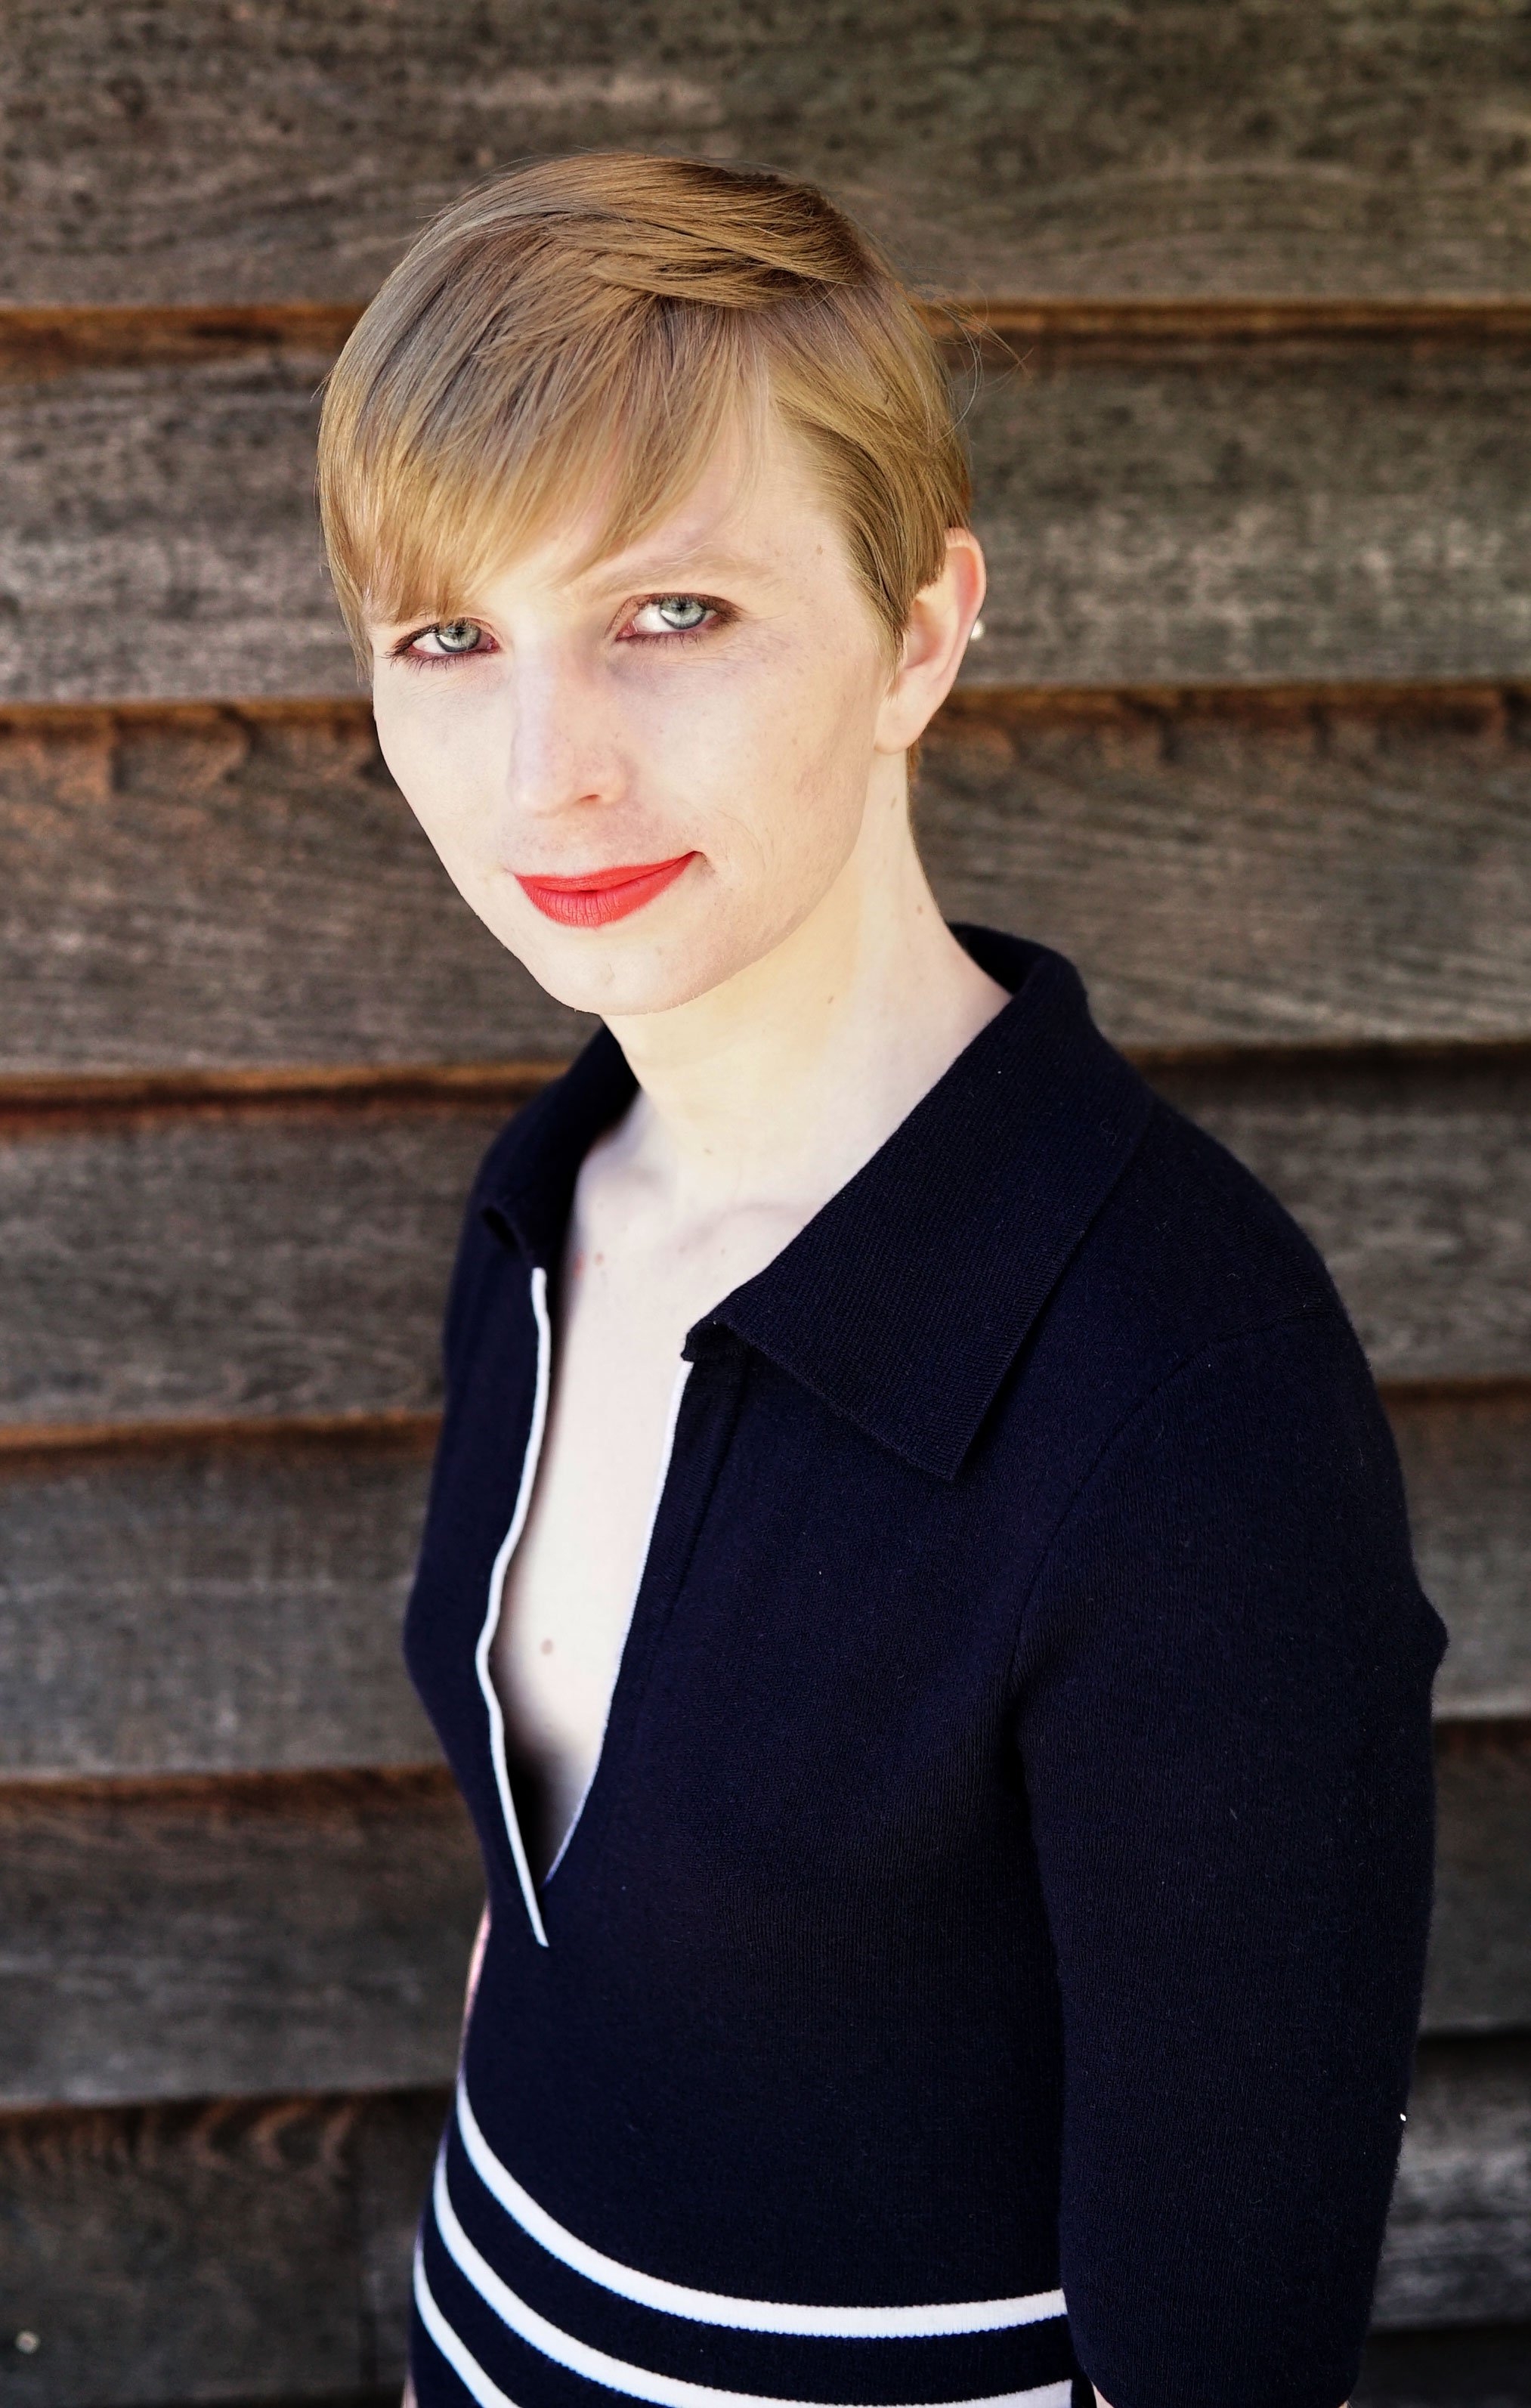 auteur Chelsea Manning de la citation La lutte pour la justice pour la communauté transgenre est largement invisible pour nos concitoyens, malgré la discrimination systématique rampante des personnes trans - celles dont l'identité de genre diffère du sexe qui leur a été attribué à la naissance.